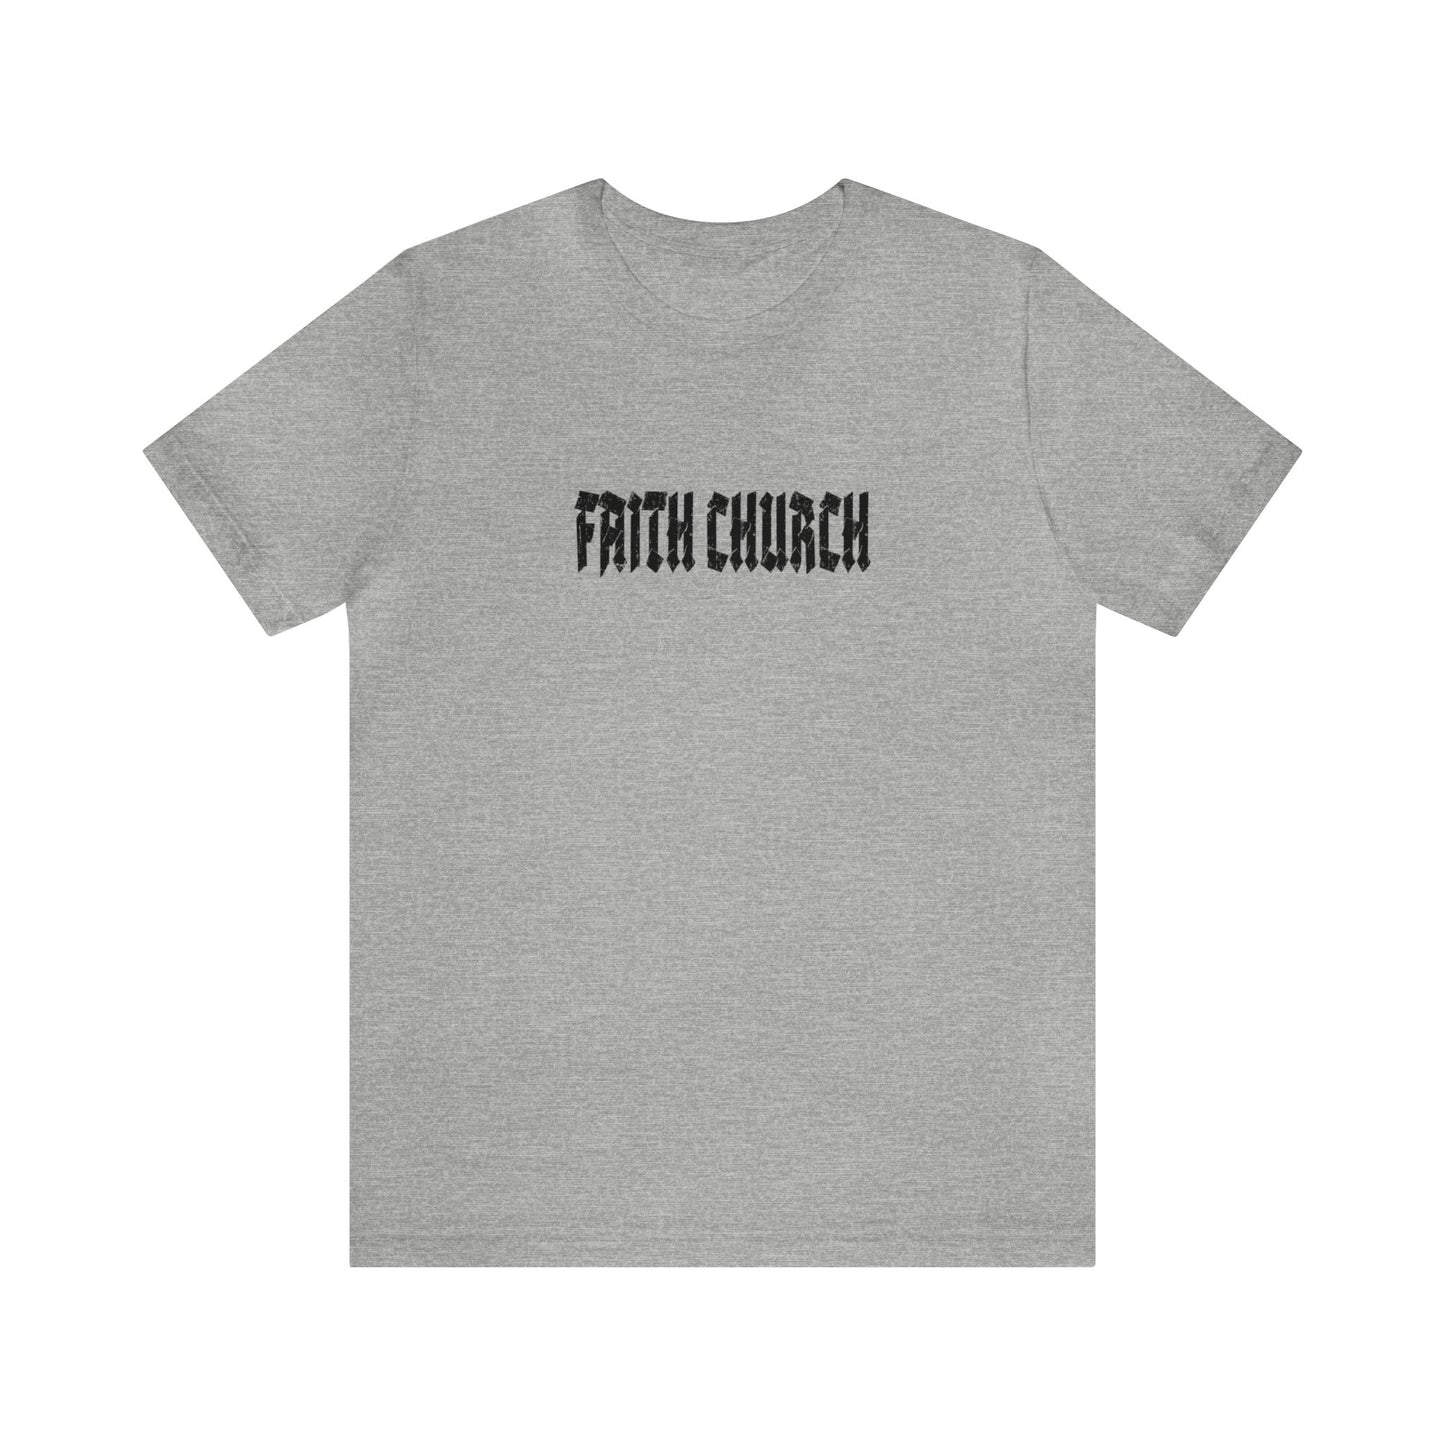 FAITH CHURCH Tee